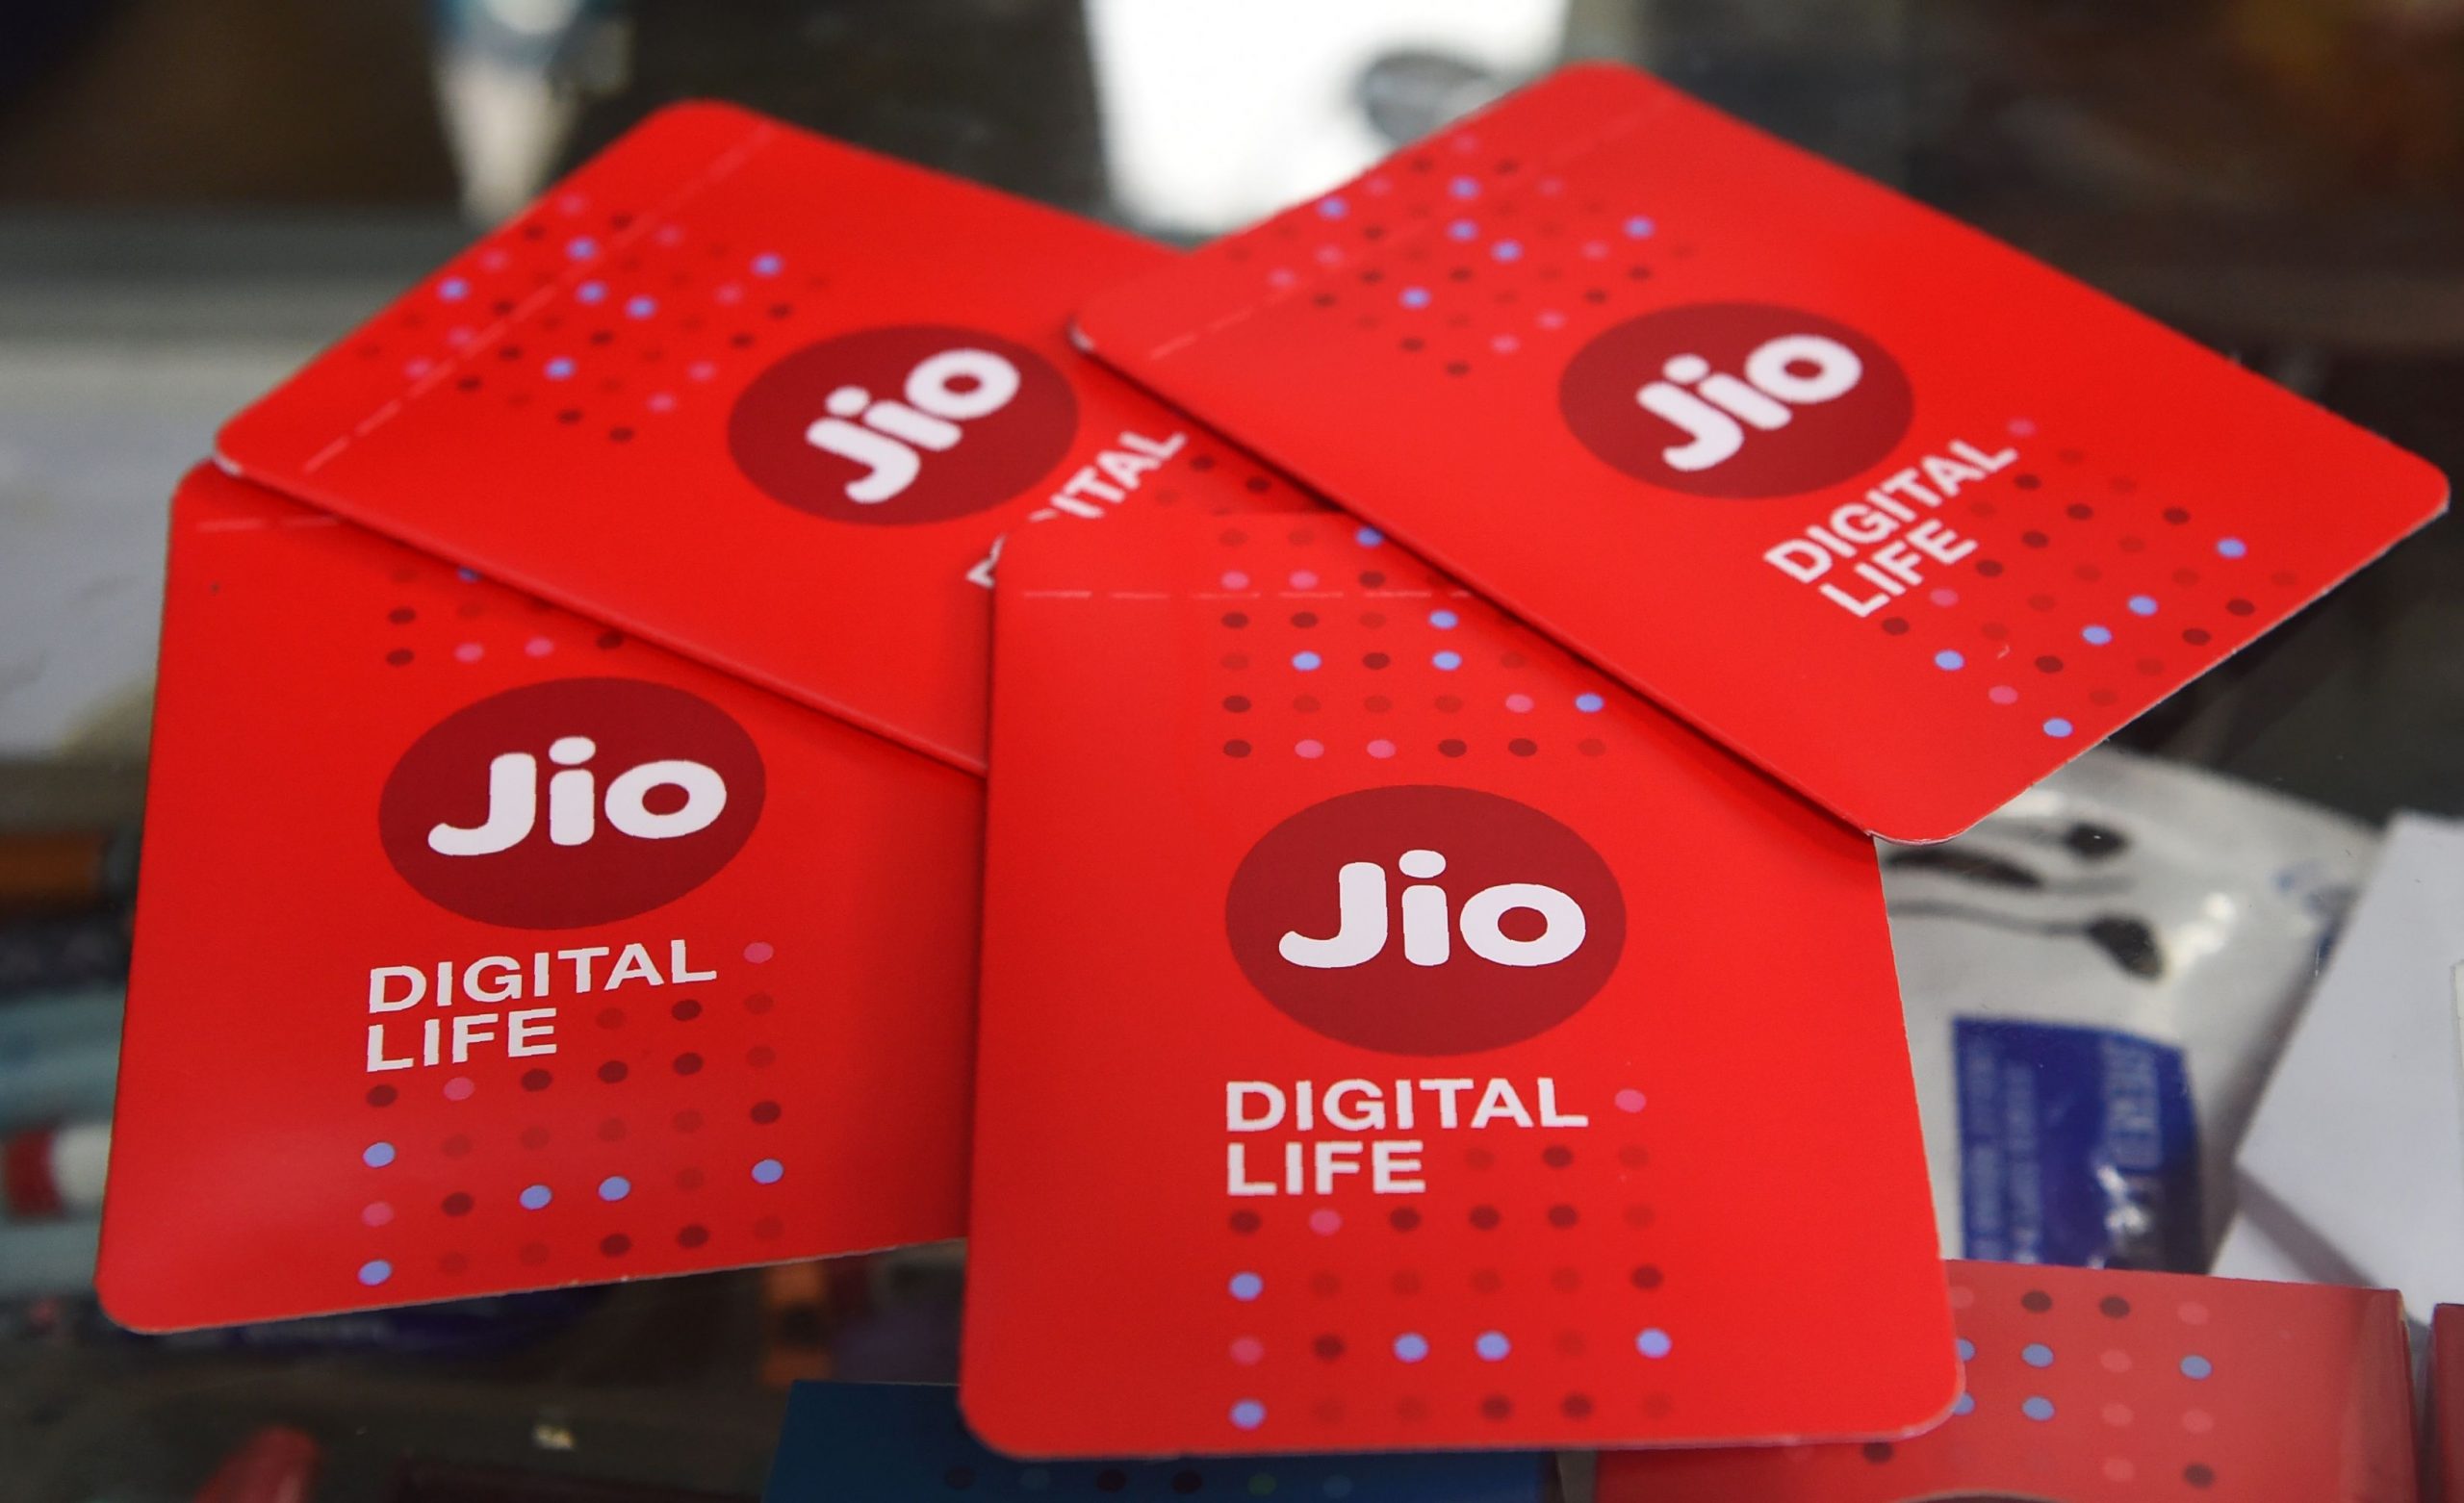 Reliance Jio ने दिया बड़ा झटका, प्रीपेड प्लान्स करीब 500 रुपए तक महंगे, देखिए नए चार्जेस और वैलिडिटी